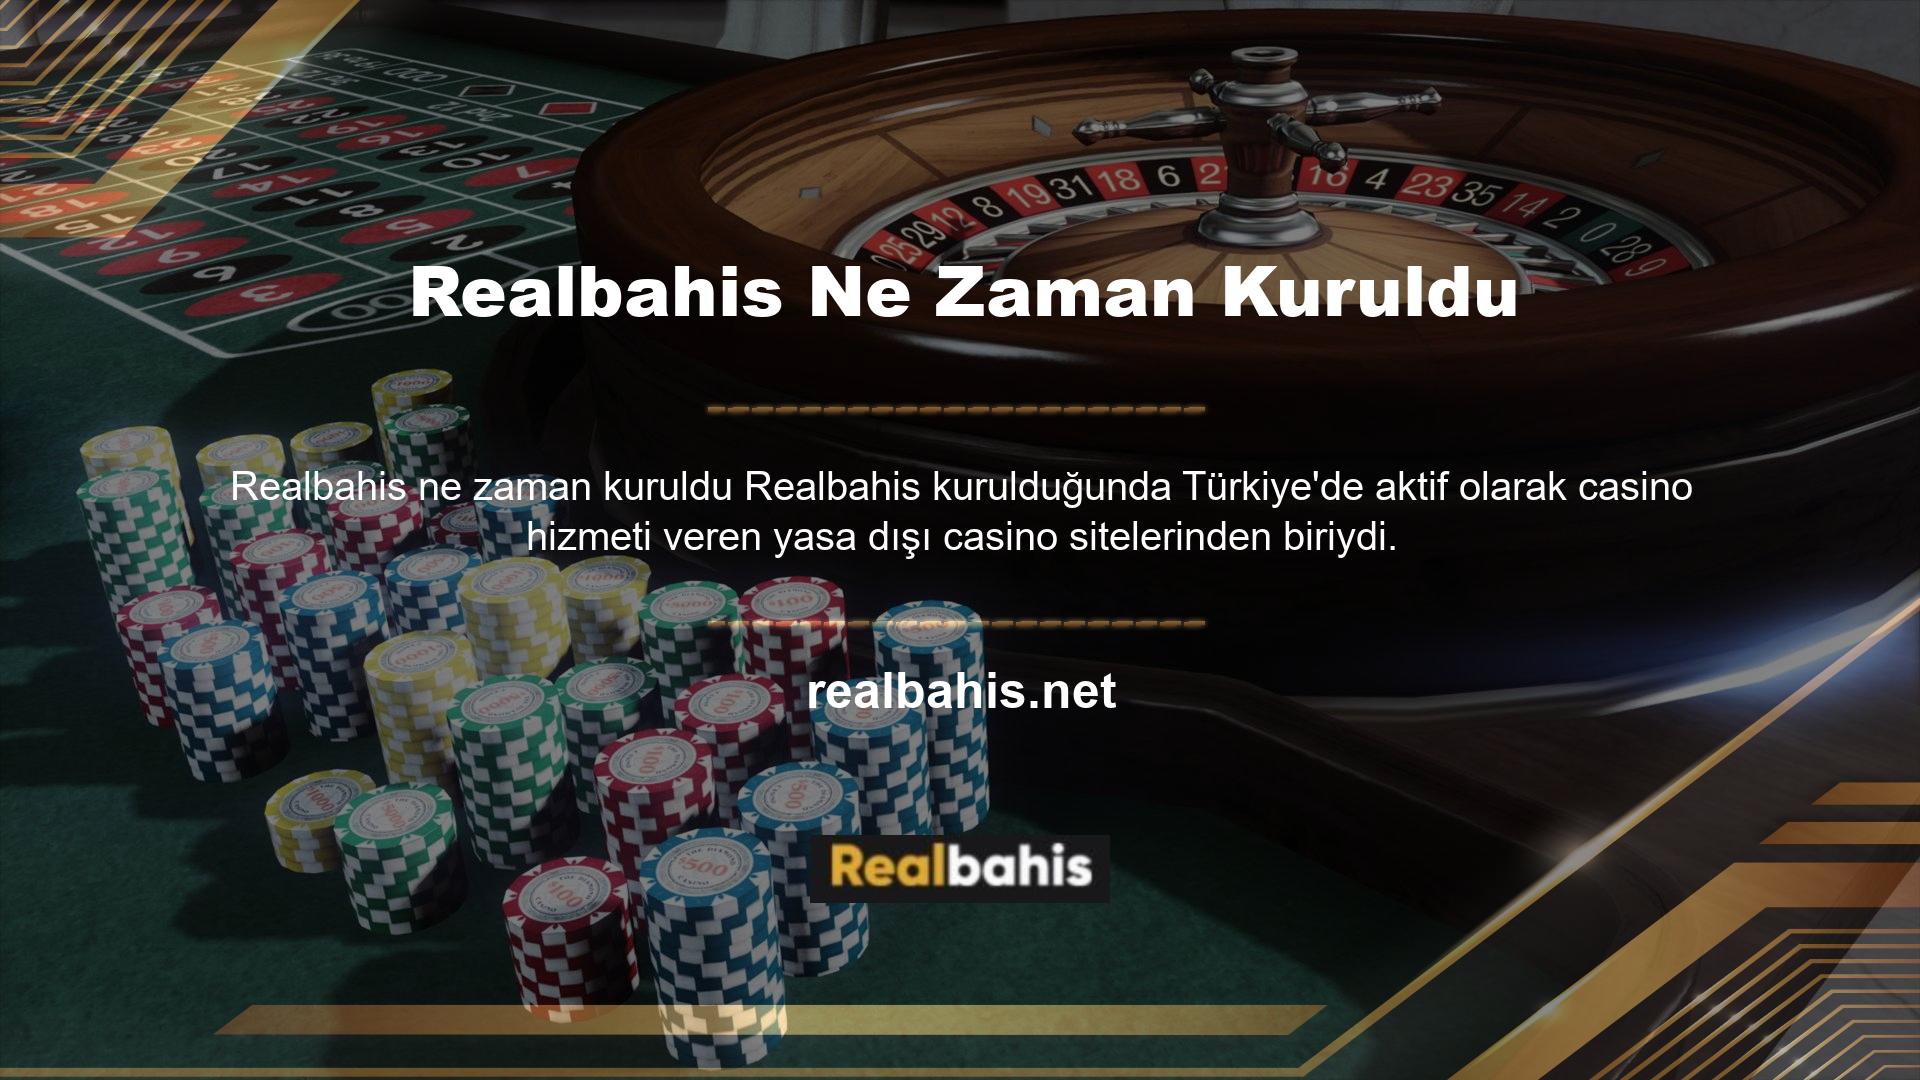 Realbahis "Türkiye'ye Destek" platformu olarak en son yeni giriş adresini bu sayfada yayınlayacağız